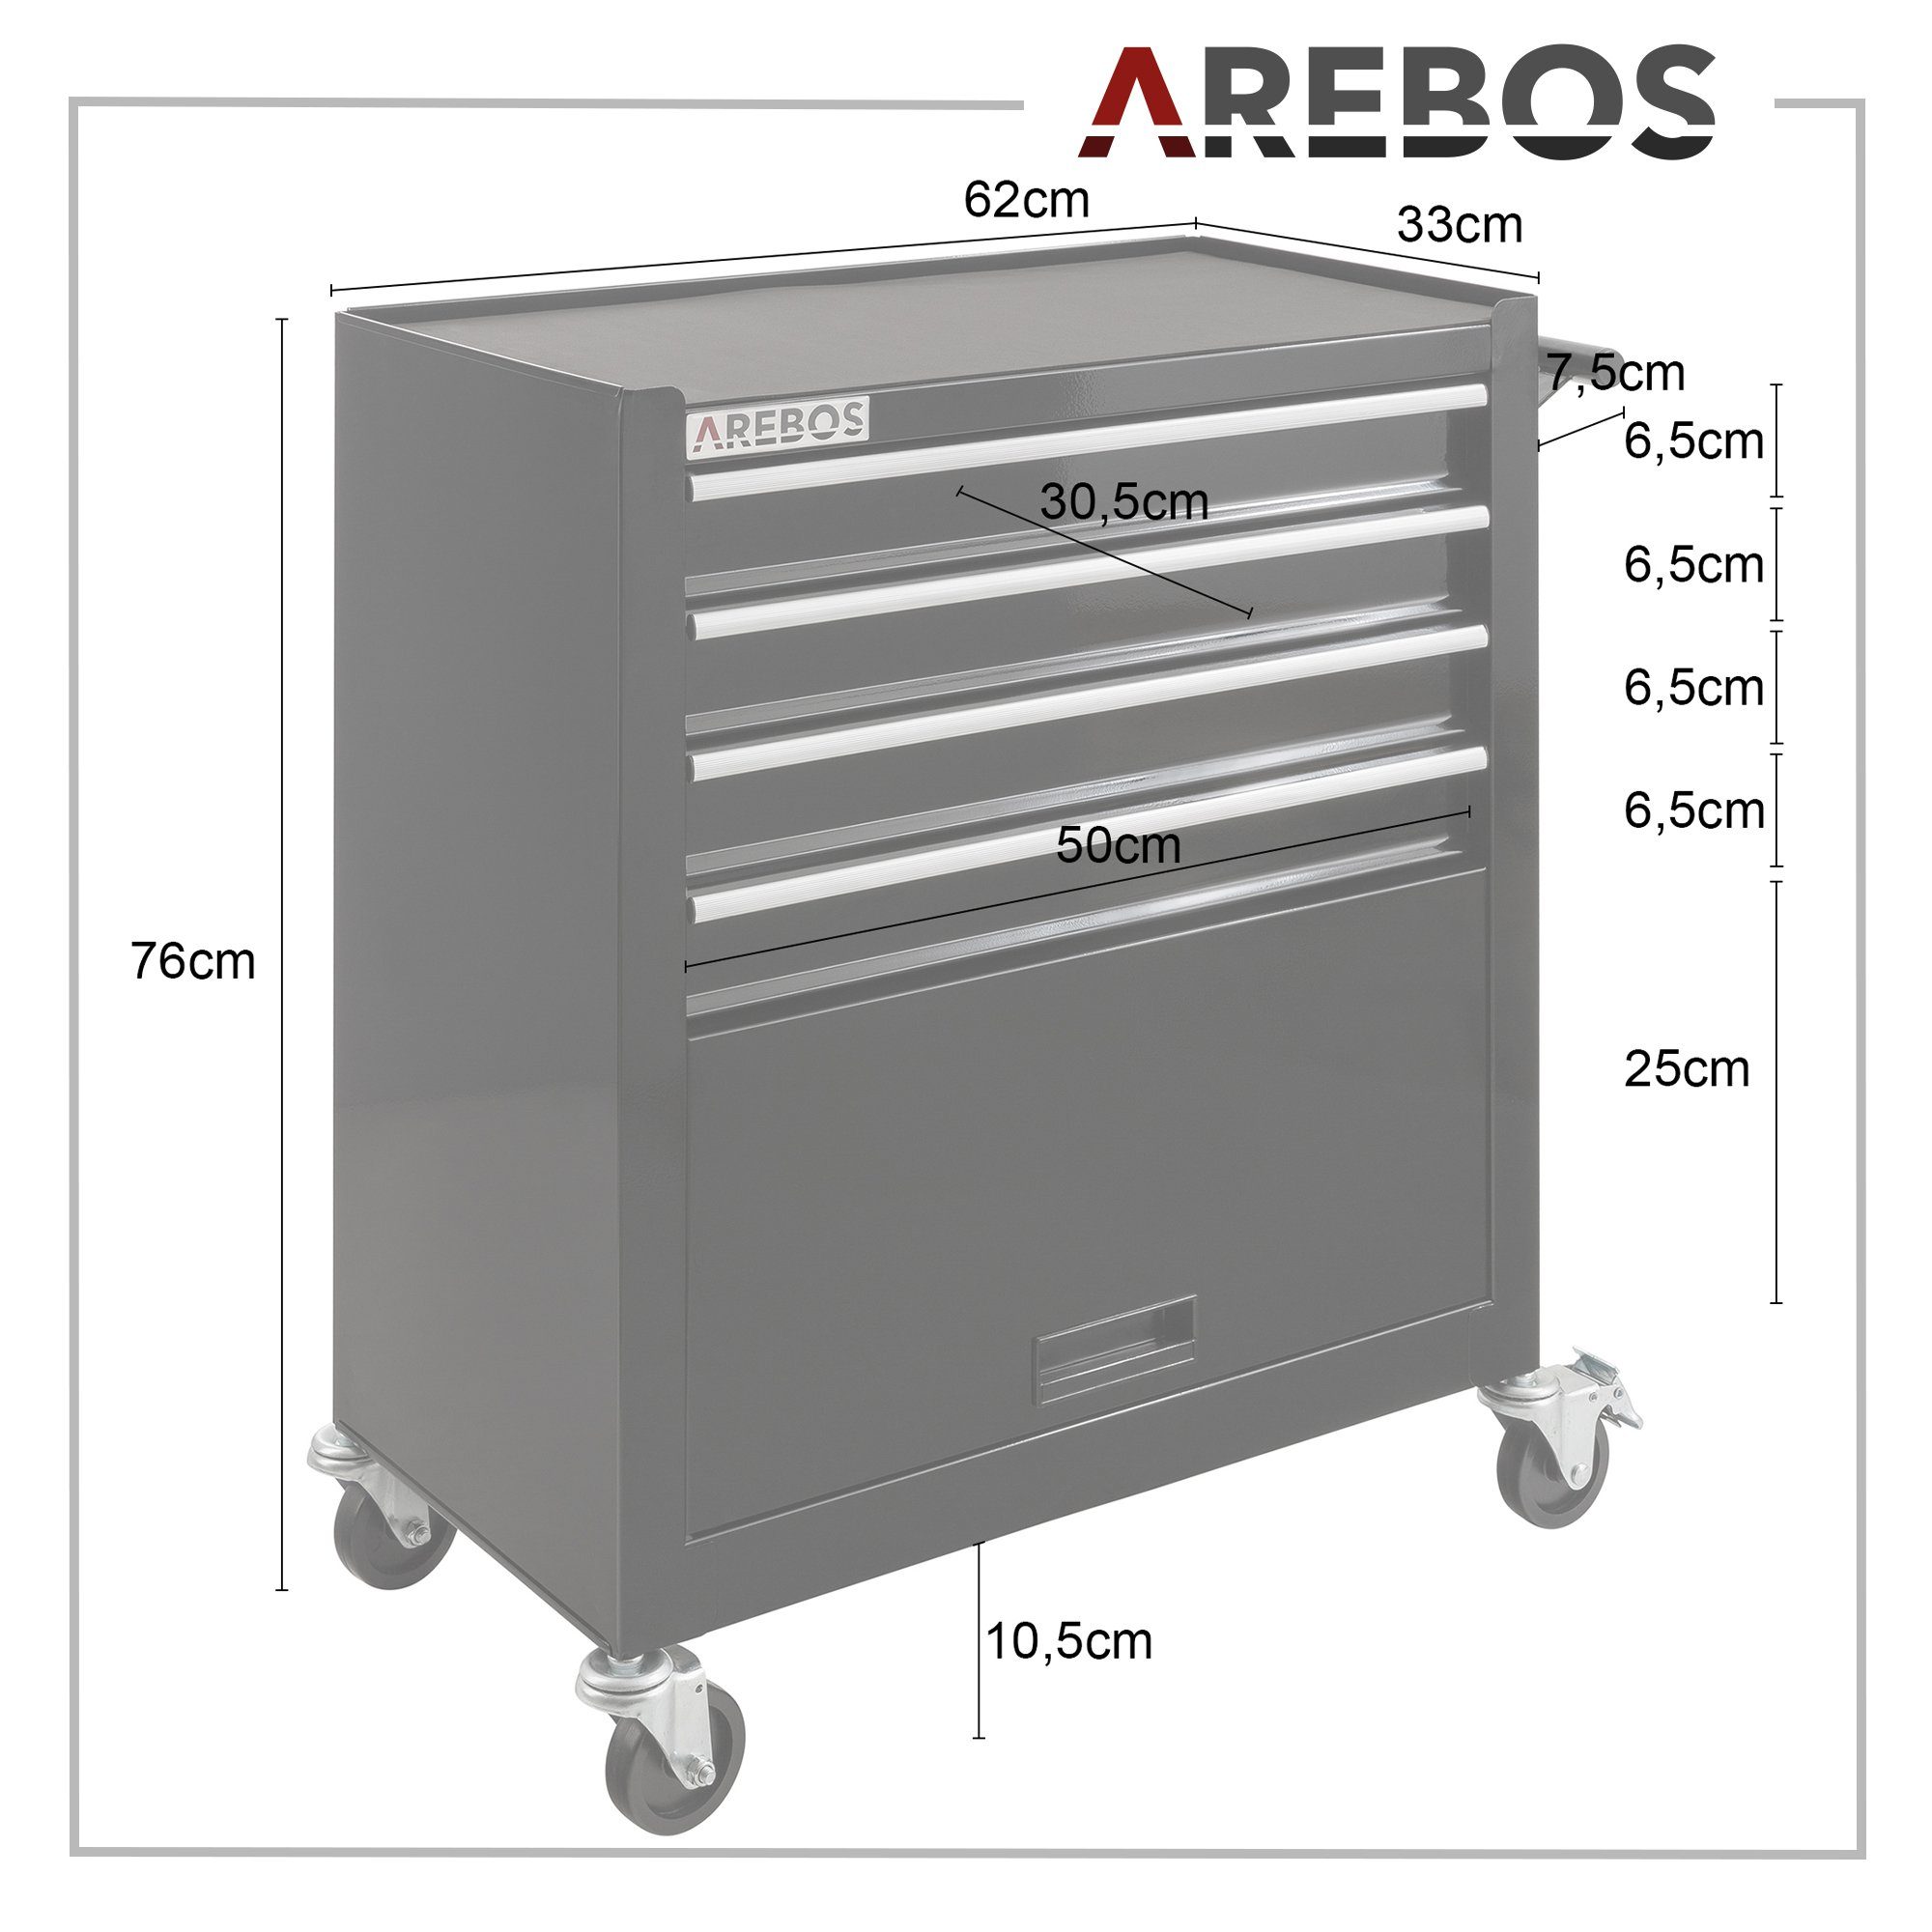 Arebos Werkstattwagen Werkzeug, Ihr großes Fach Fächer für schwarz 4 + Antirutschmatten, inkl